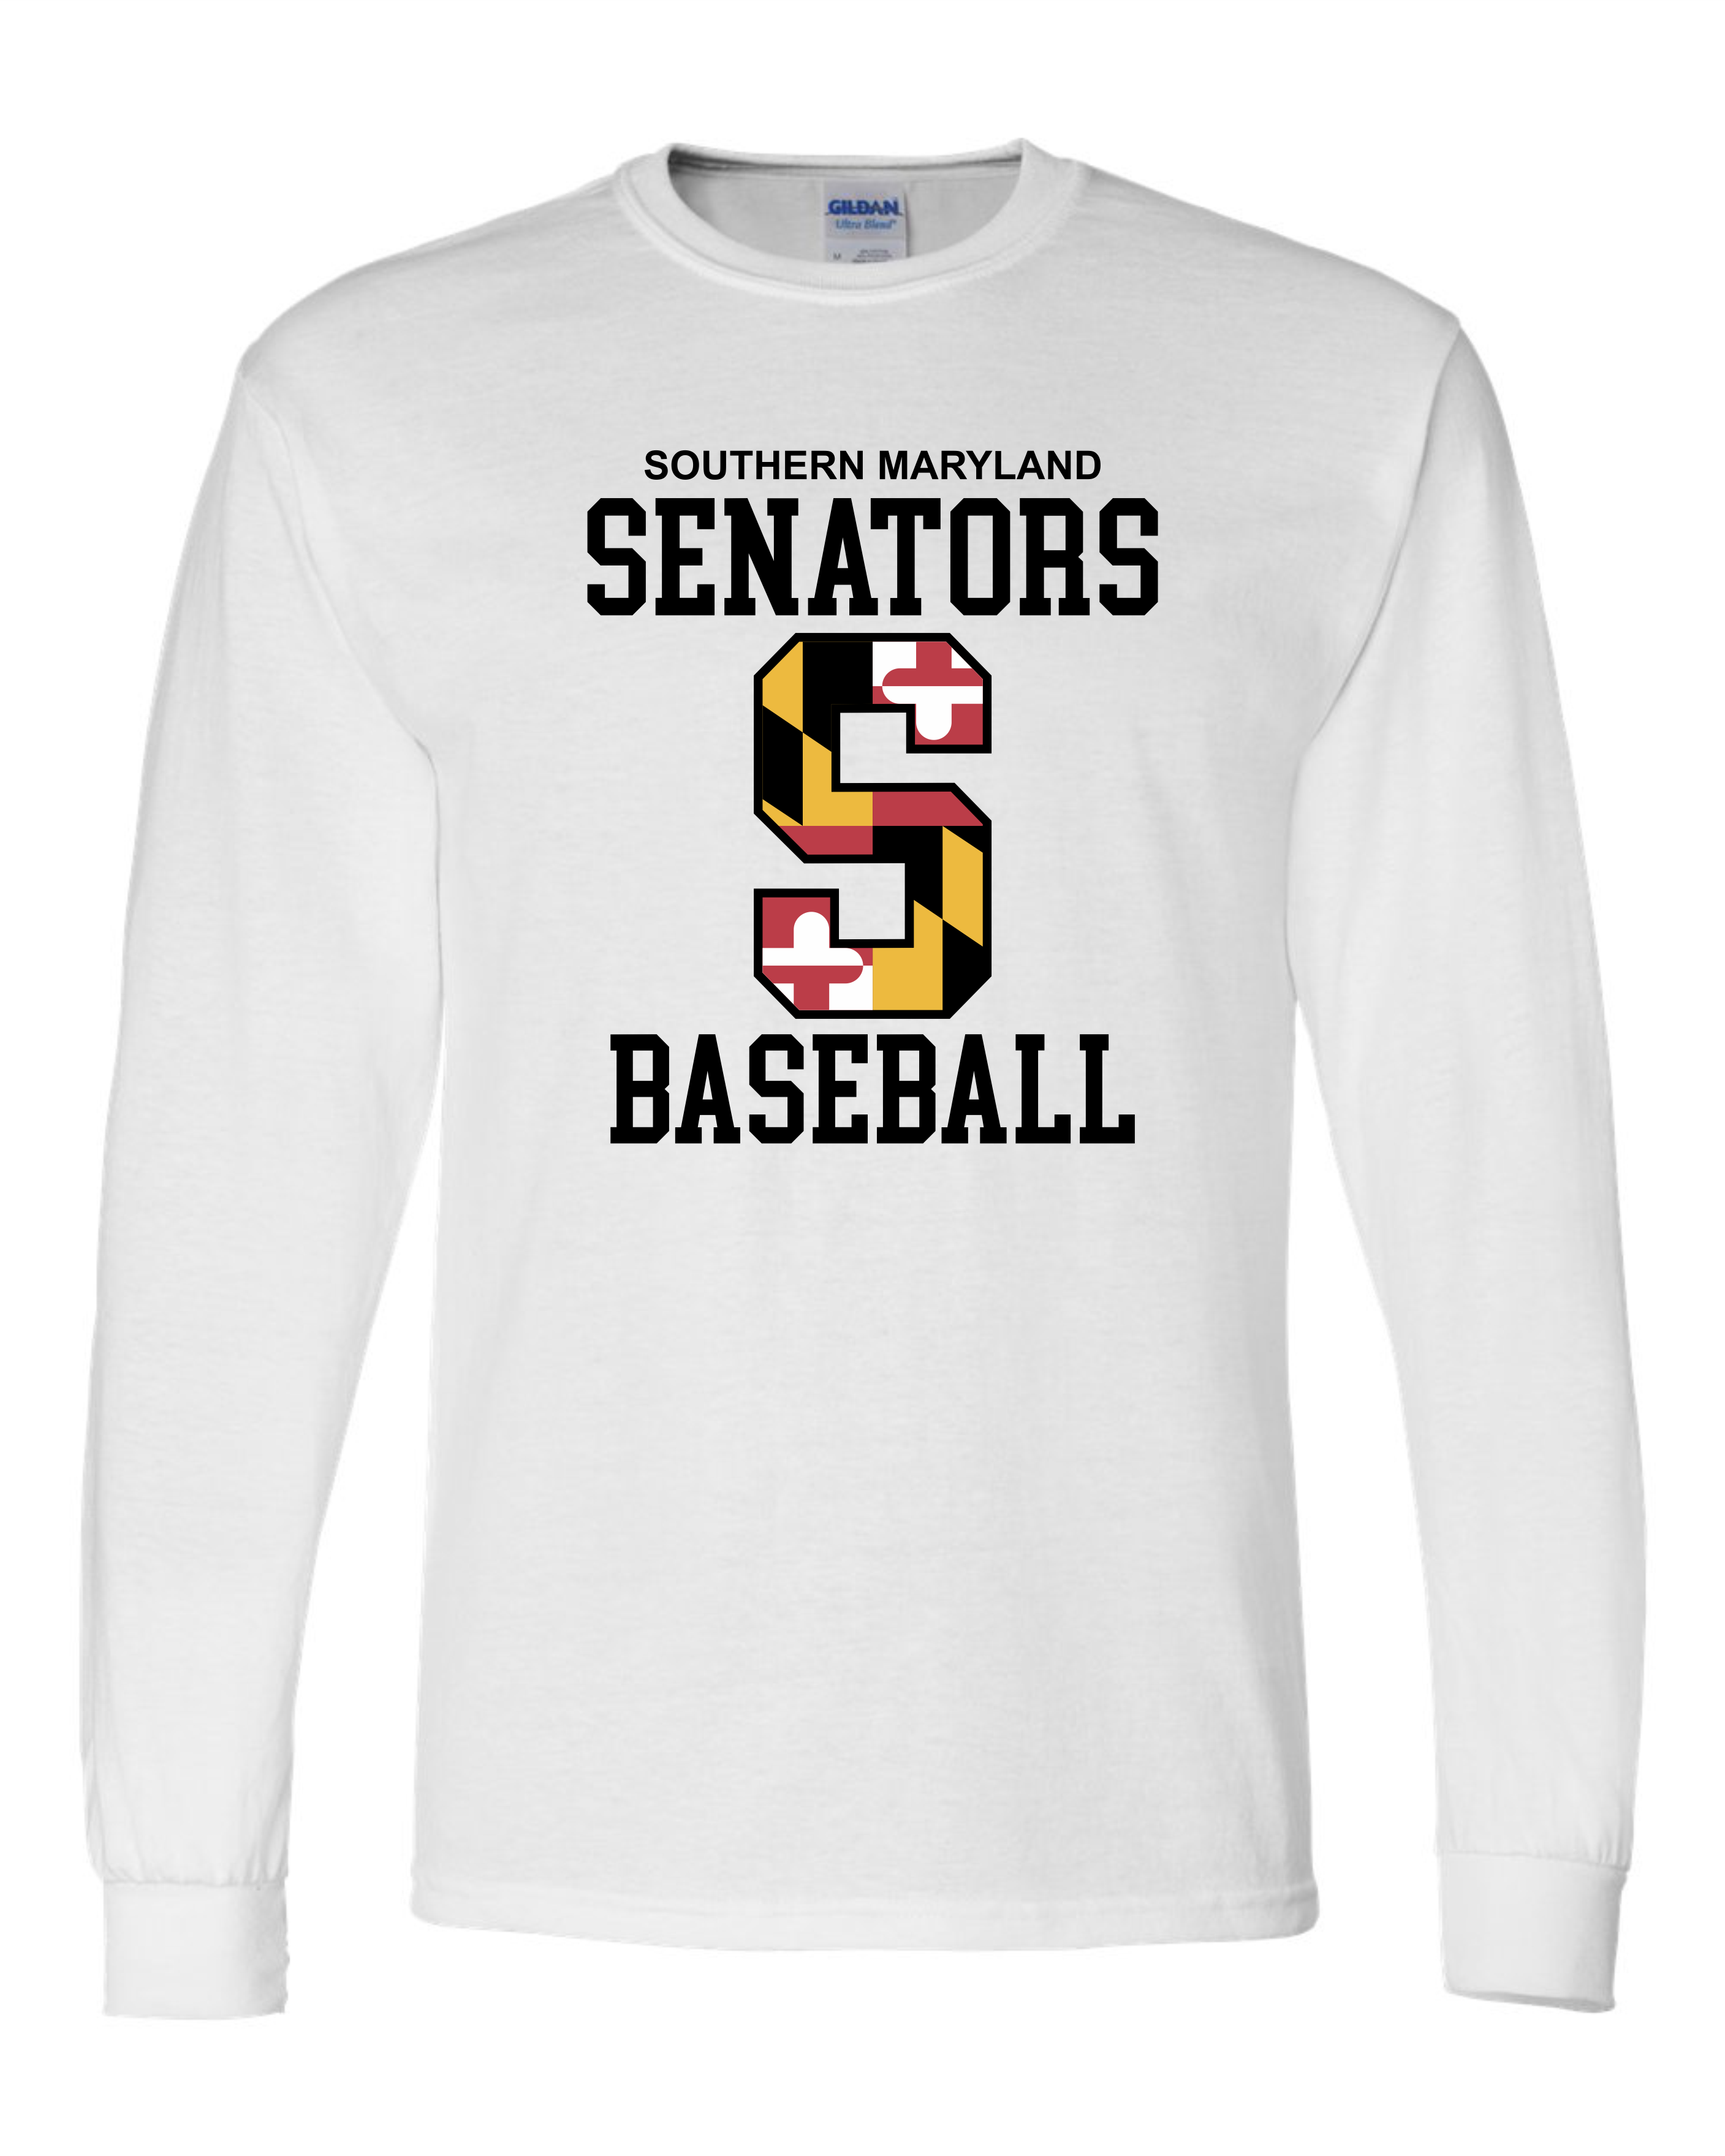 Senators Long Sleeve T-shirt Big S Design